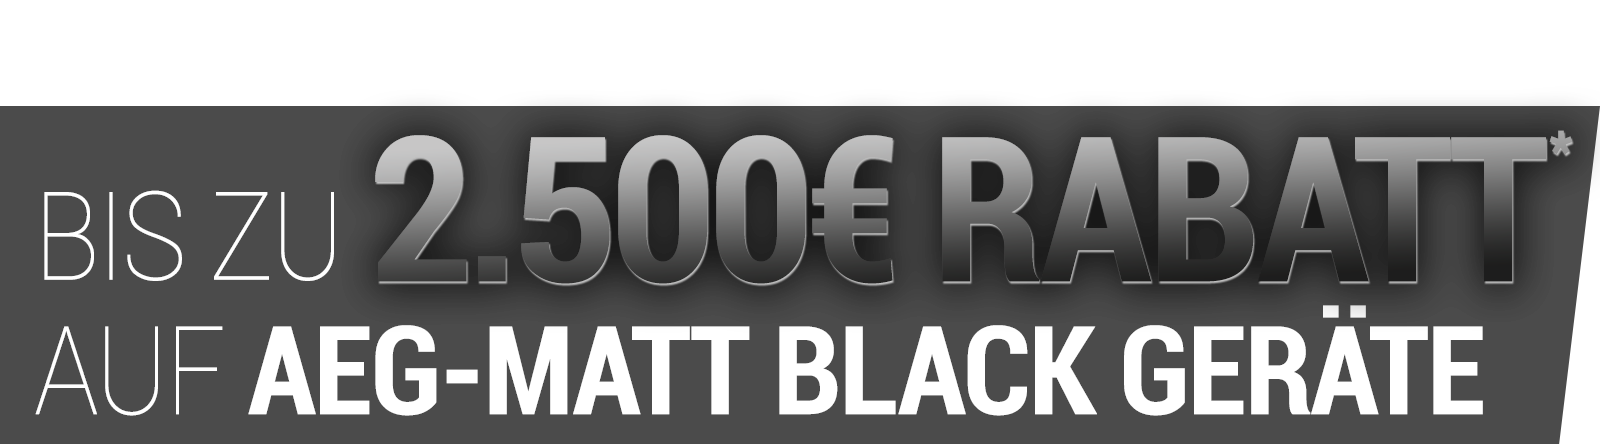 Bis zu 2500 Euro Rabatt auf AEG-Matt Black Geräte